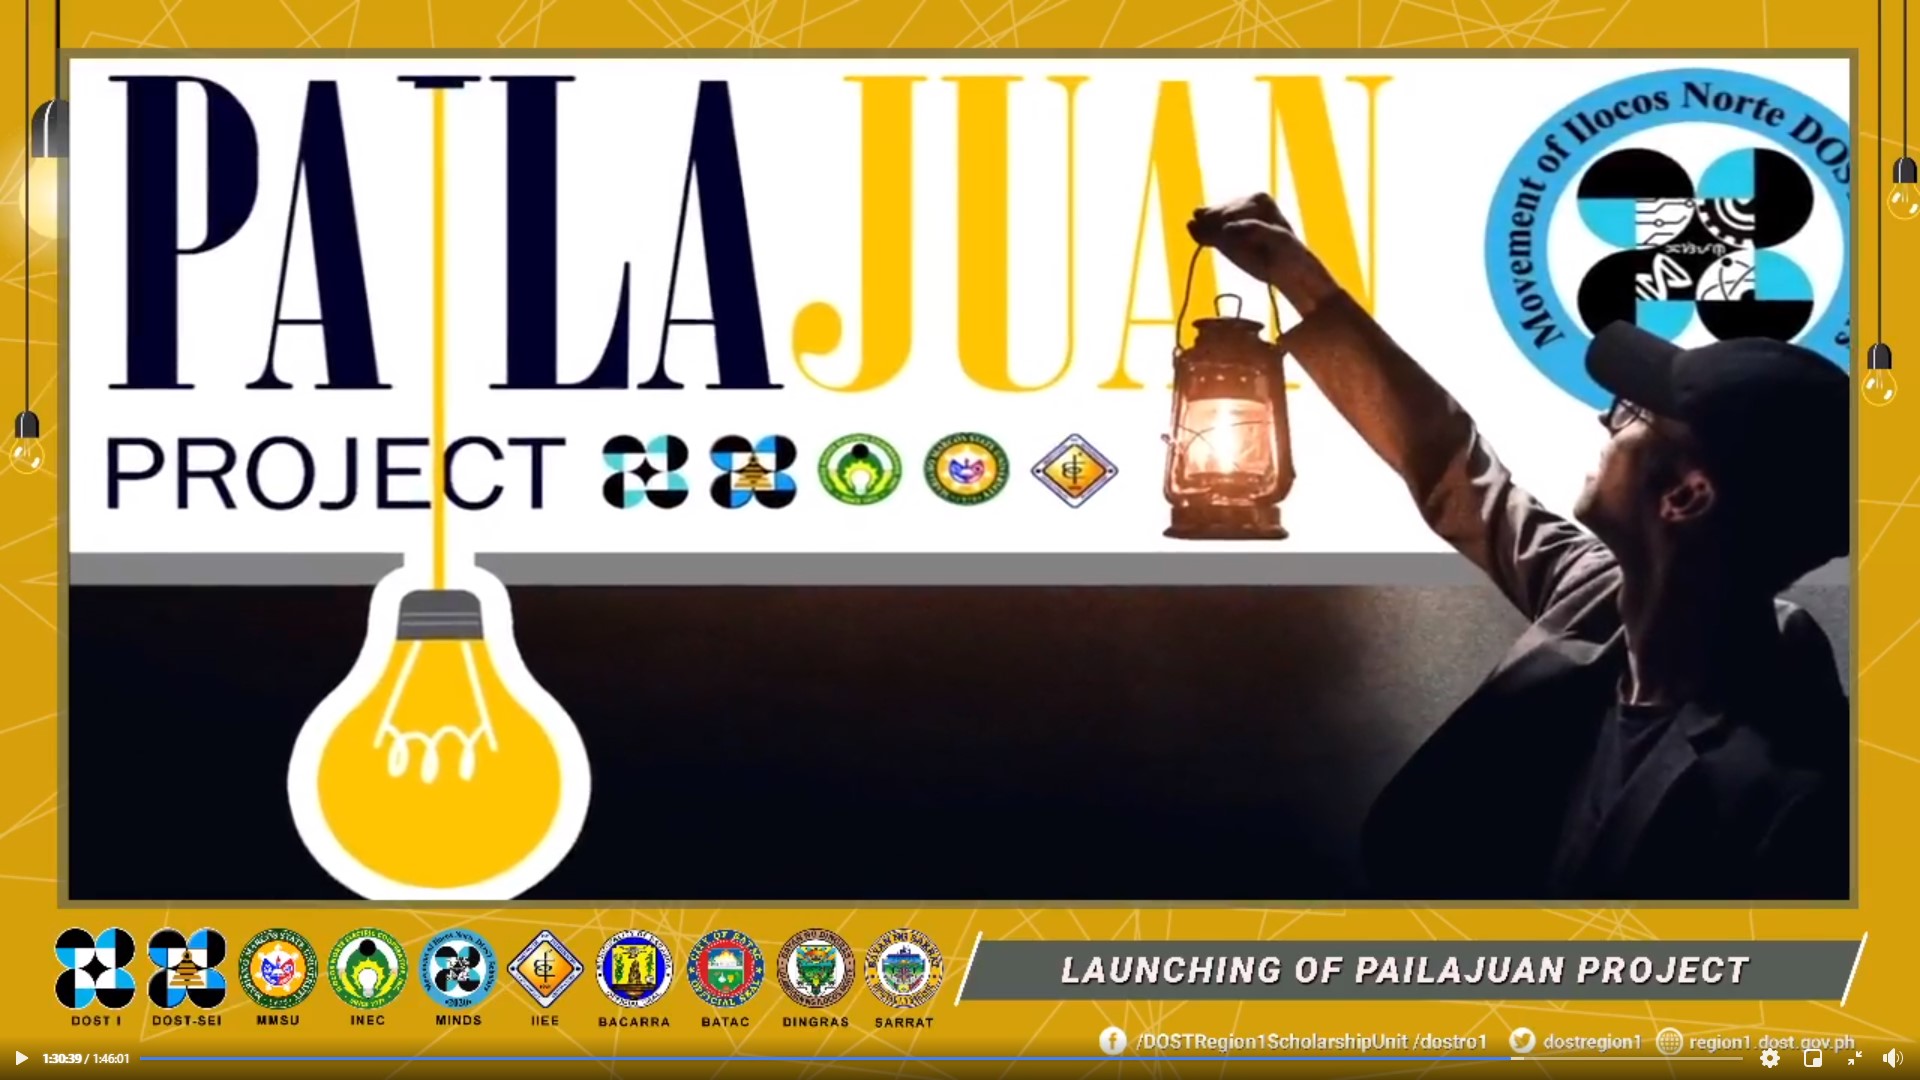 Ilocos Norte science scholars pay it forward, launch PailaJuan project image